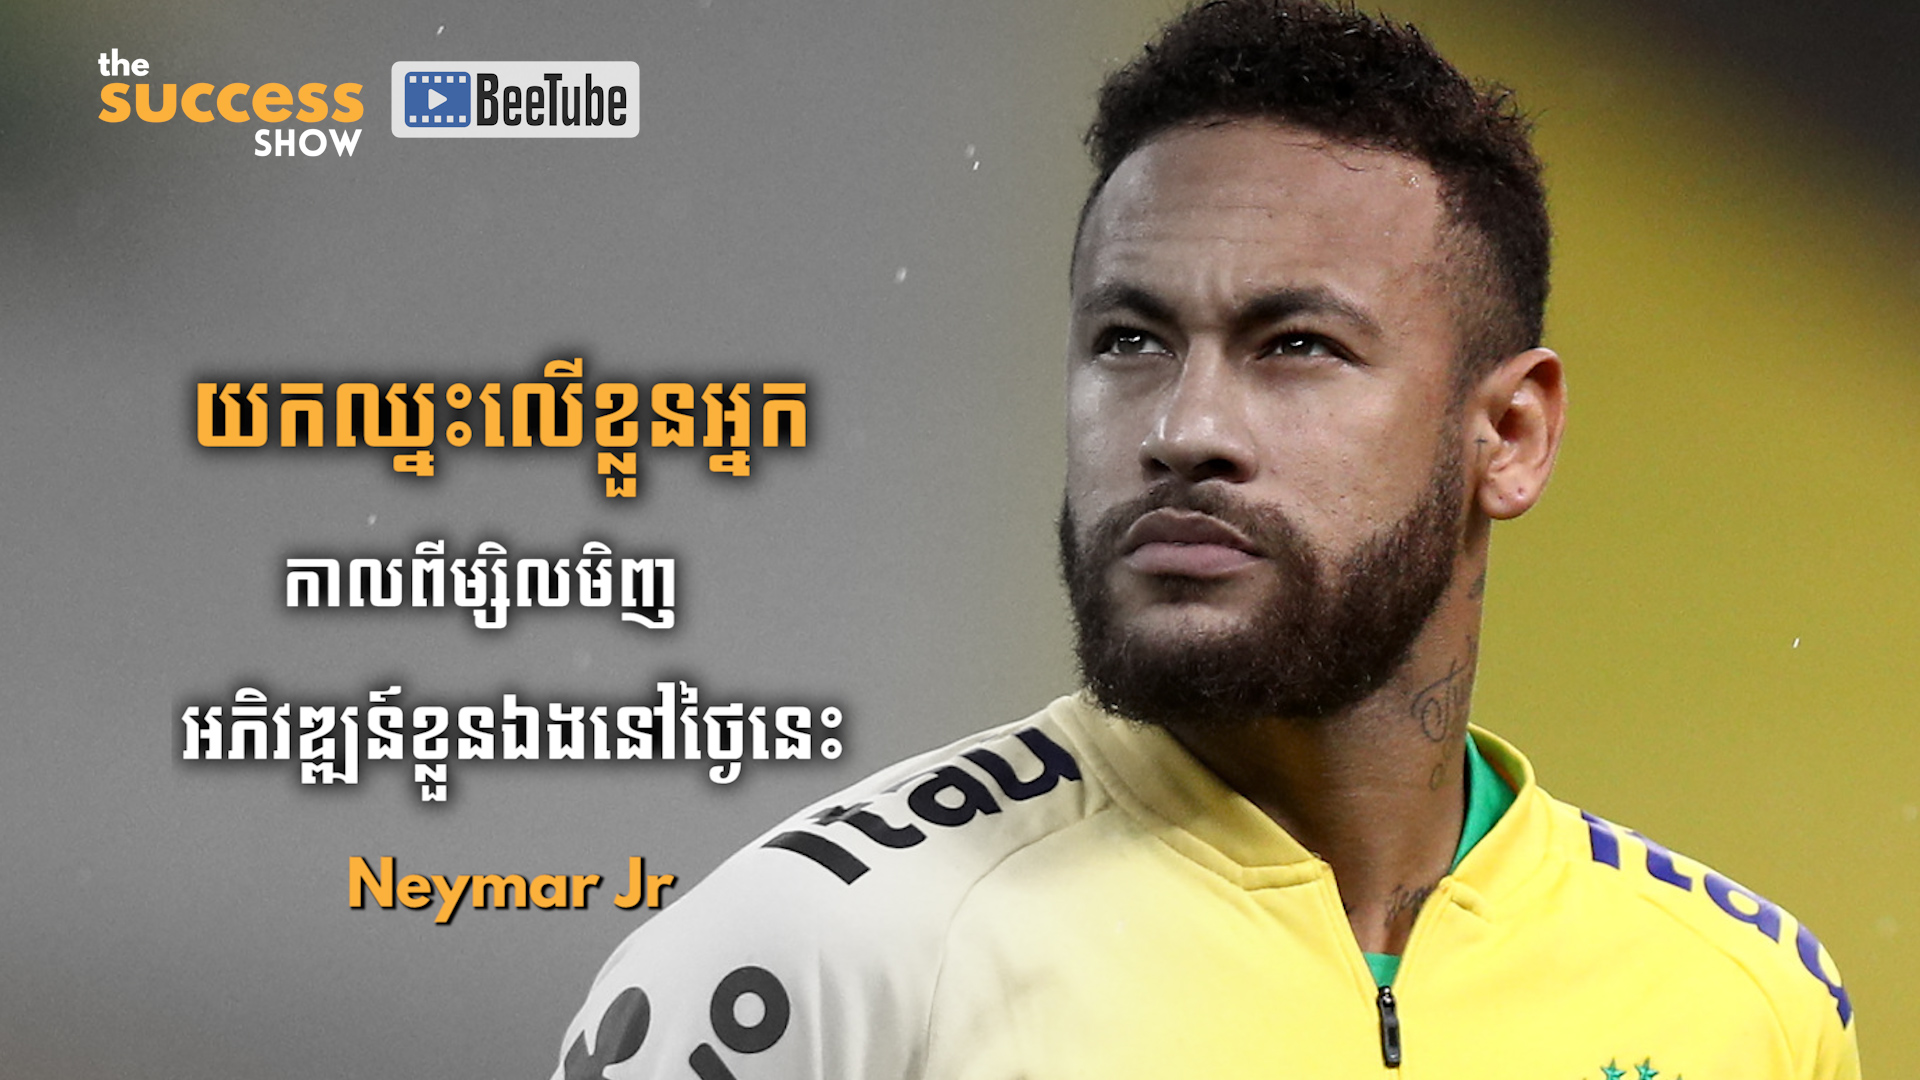 យកឈ្នះលើខ្លួនឯងពីម្សិលមិញ អភិវឌ្ឍន៍ខ្លួនឯងថ្ងៃនេះ រីករាយនឹងភាពជោគជ័យនៅថ្ងៃស្អែក - Neymar Jr